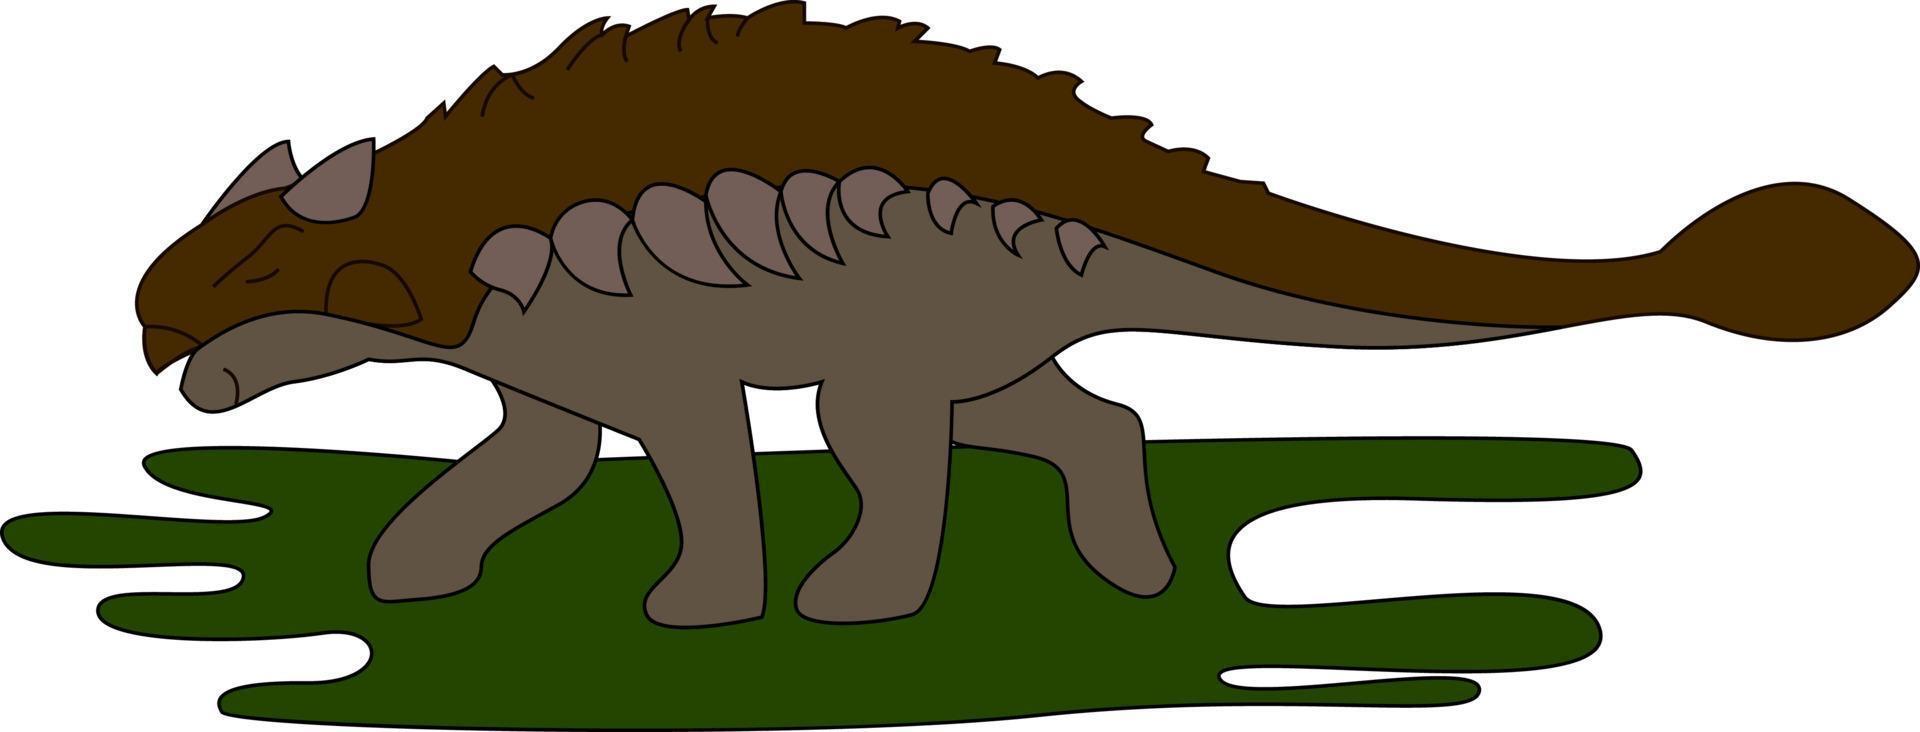 ankylosaurus sobre hierba, ilustración, vector sobre fondo blanco.